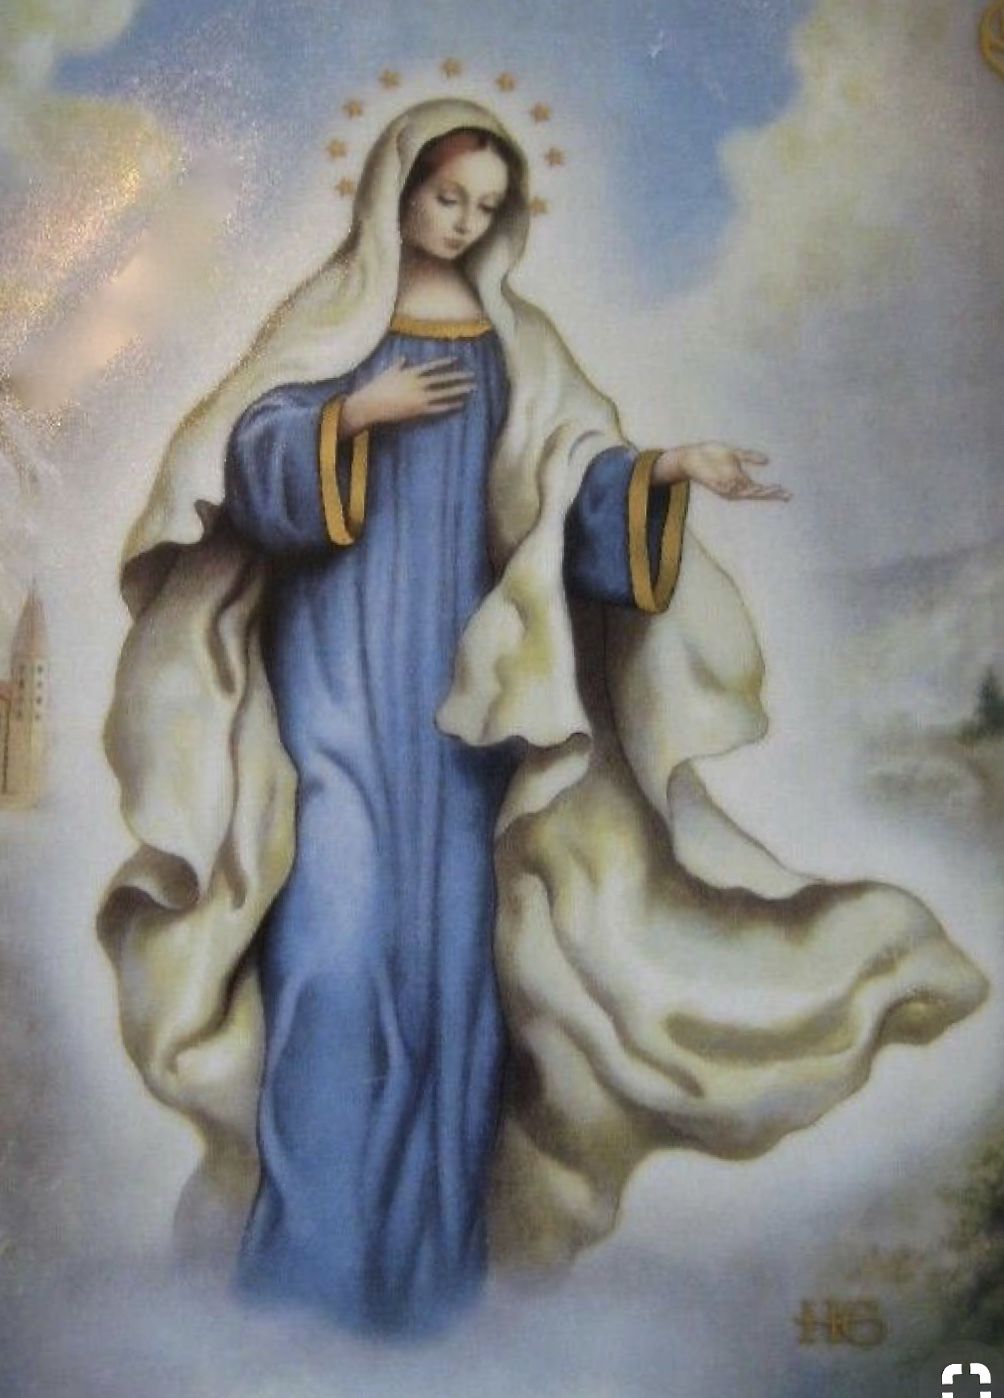 Virgin Mary Medjugorje Painting - 1004x1398 Wallpaper 